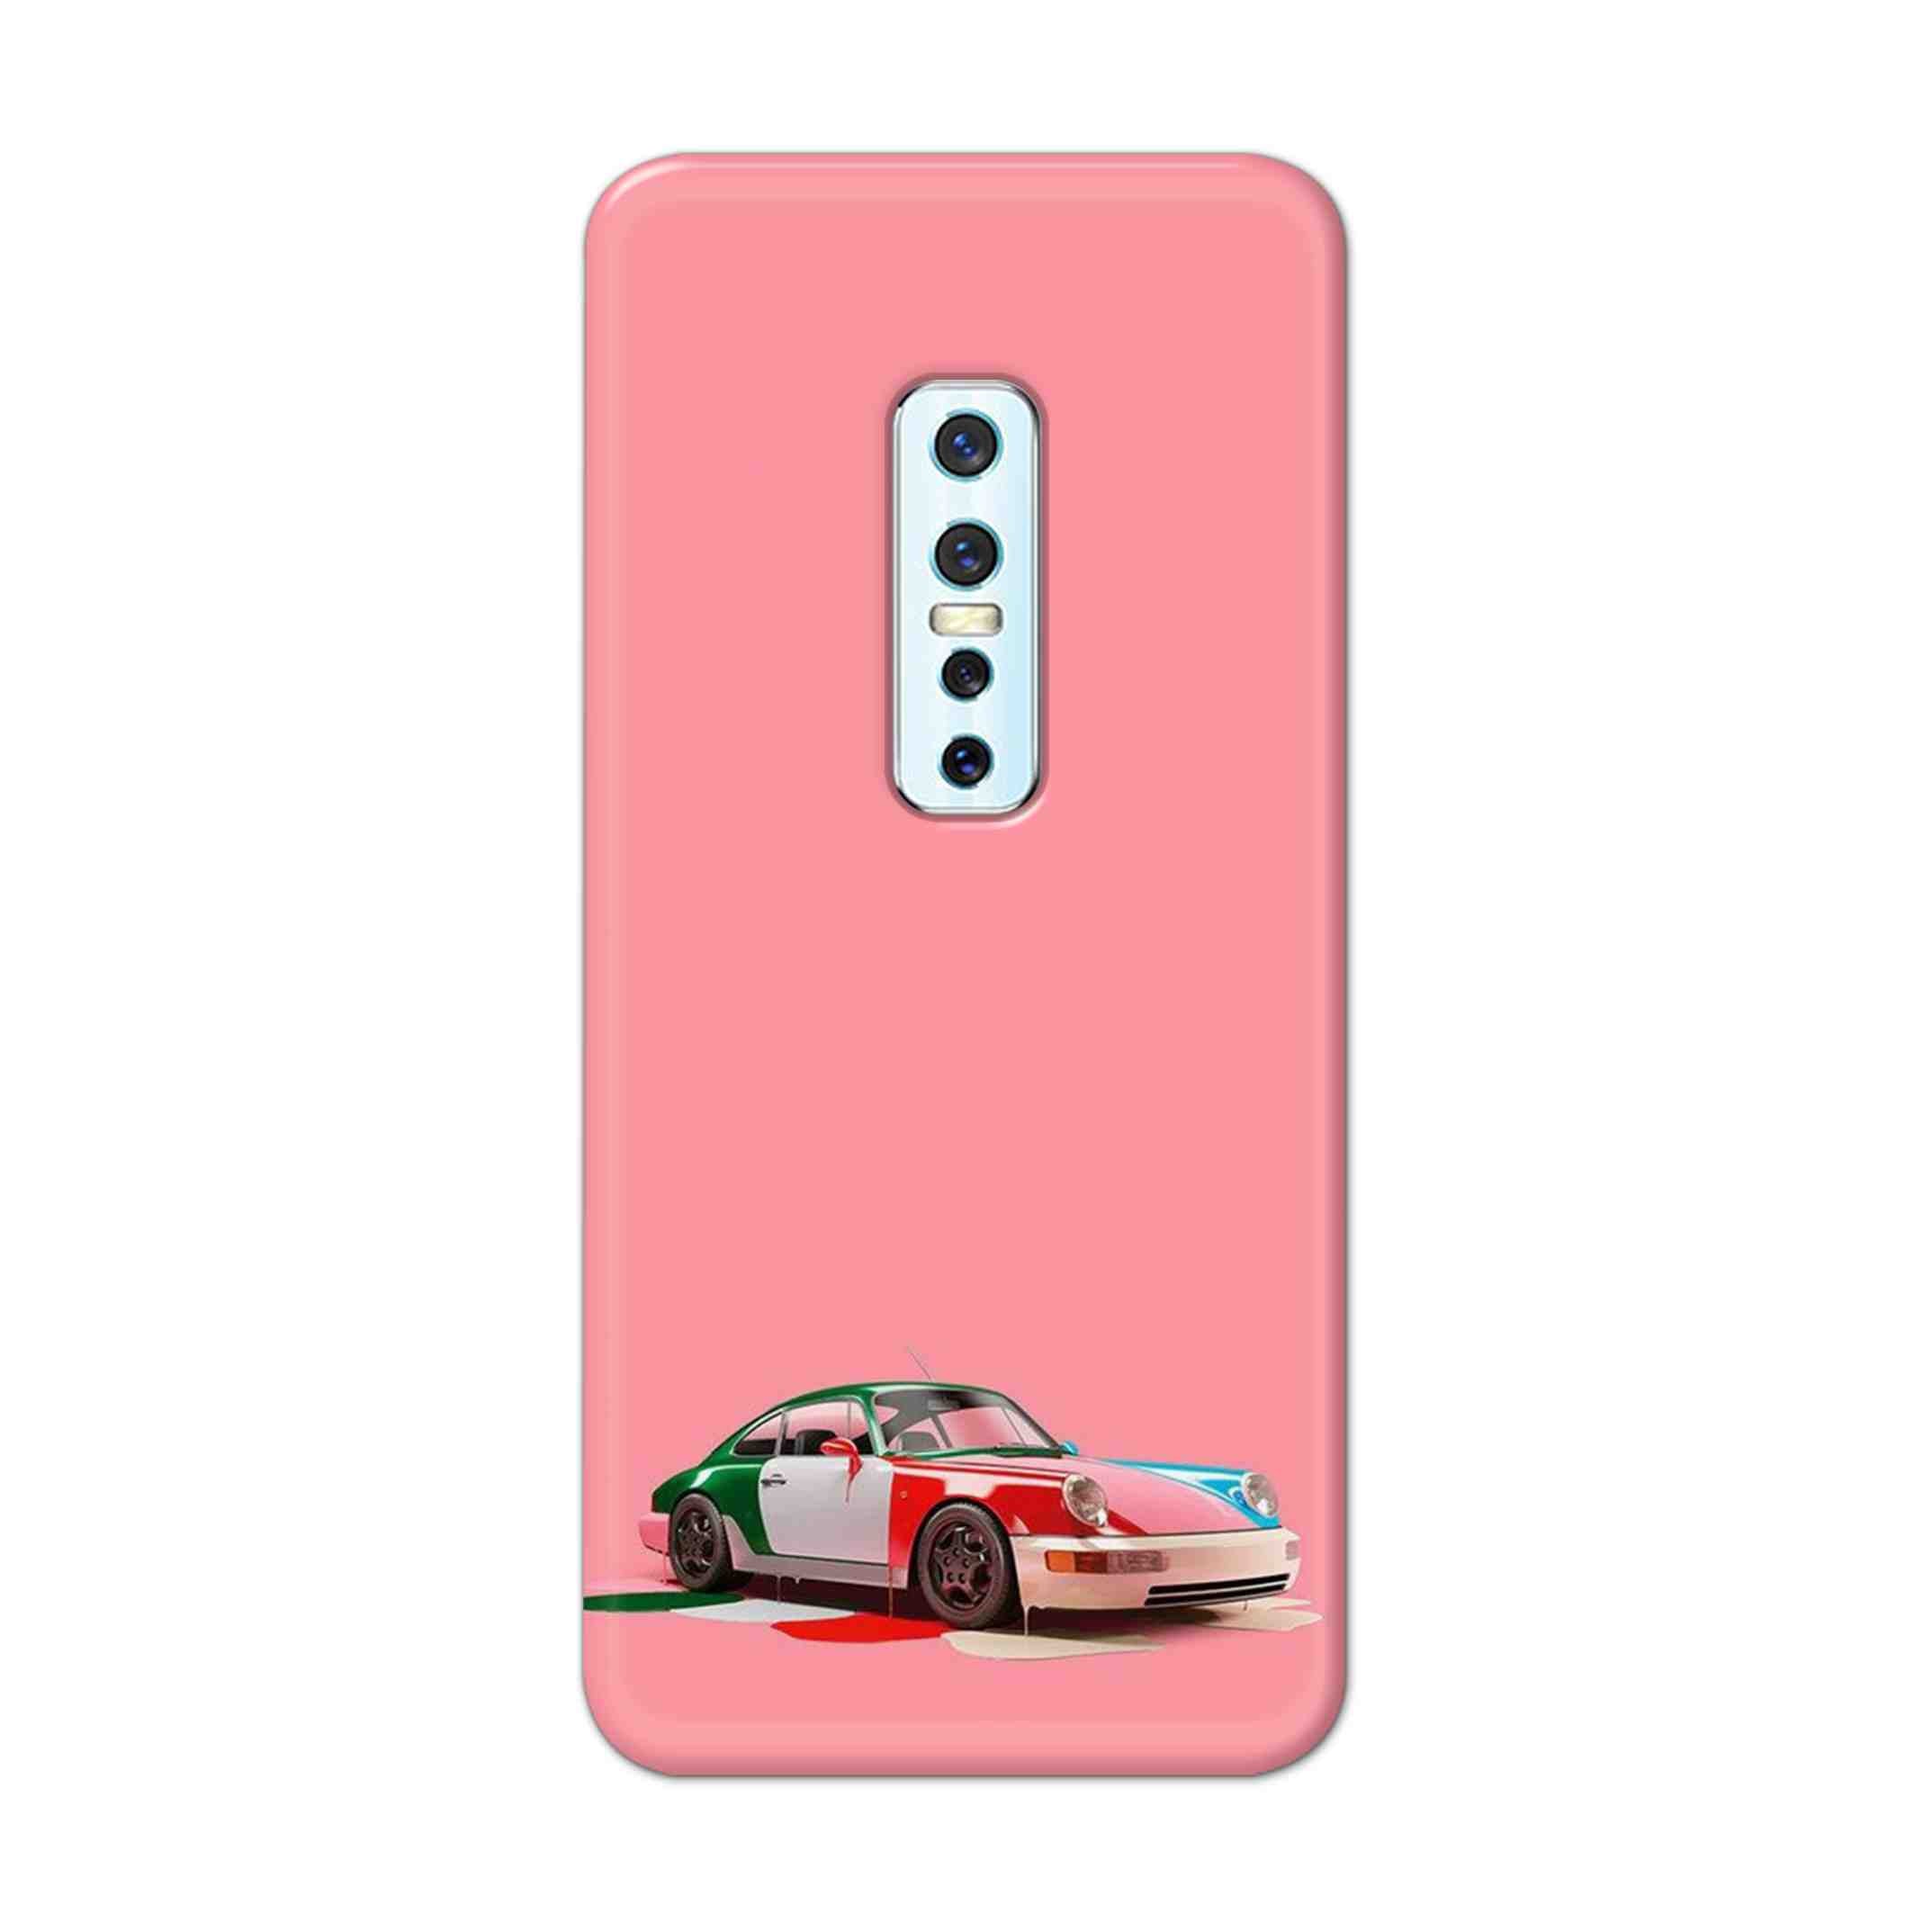 Buy Pink Porche Hard Back Mobile Phone Case Cover For Vivo V17 Pro Online